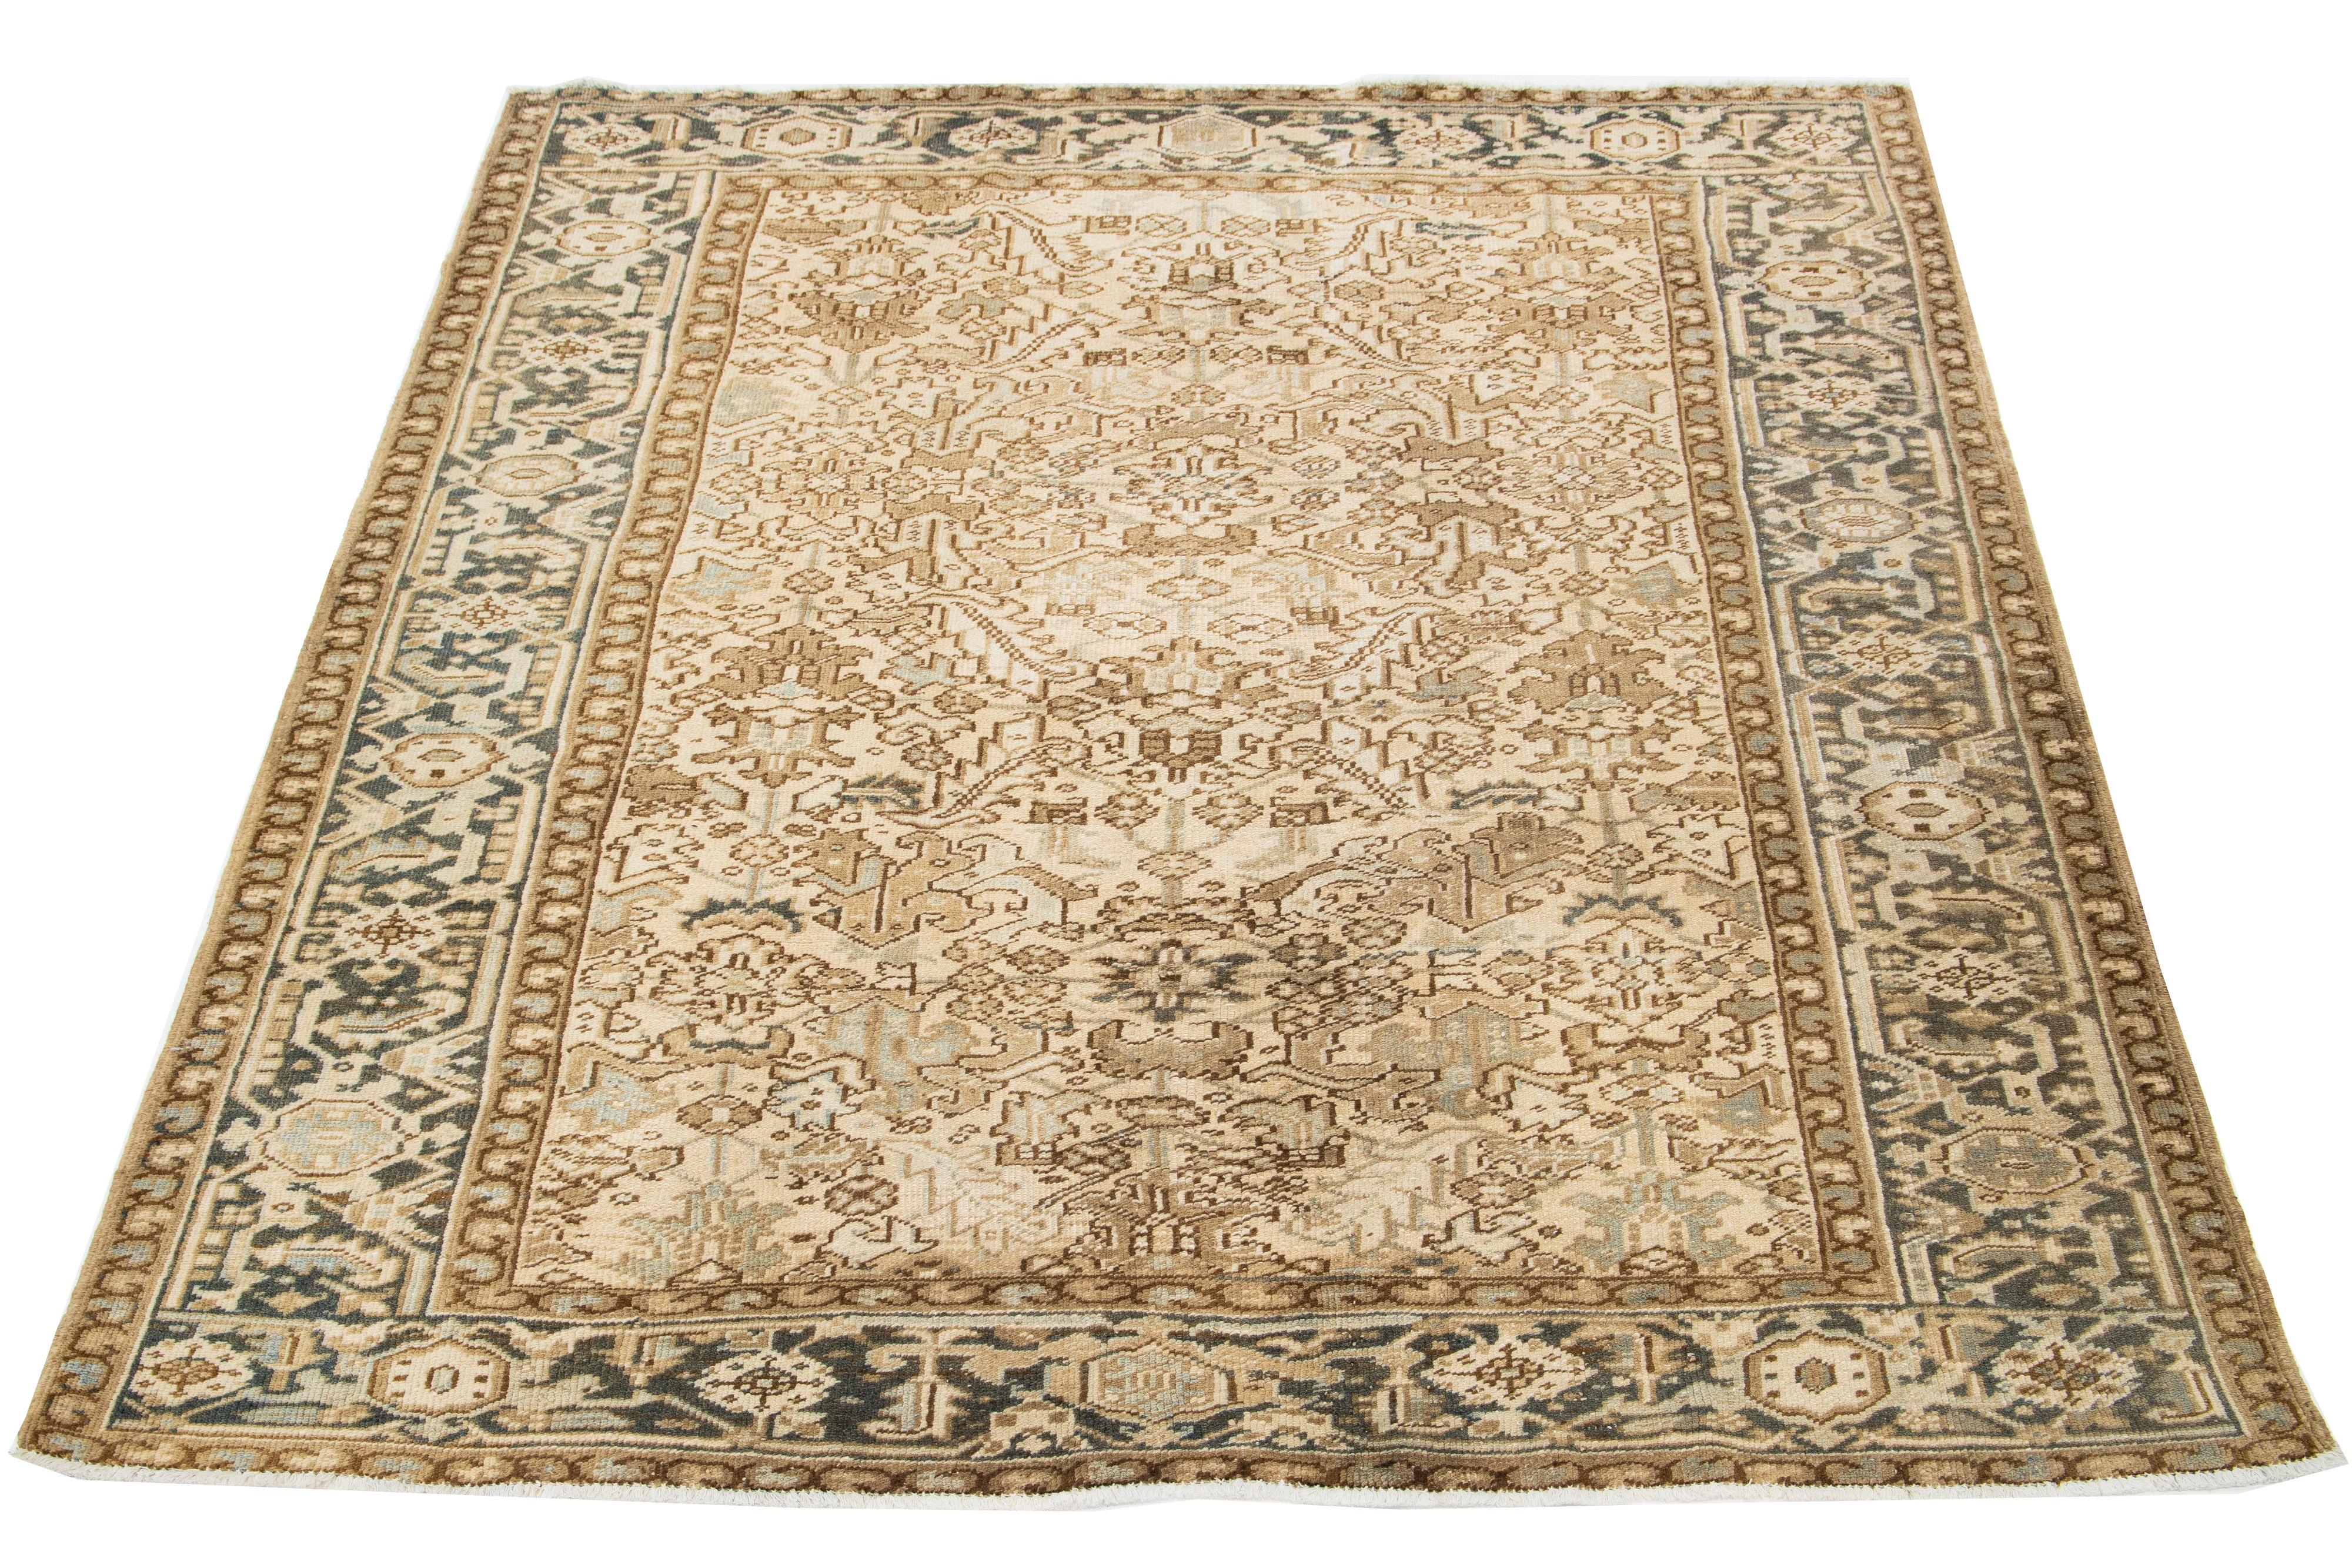 Antiker persischer Heriz-Teppich, handgeknüpfte Wolle, blaues und hellbraunes Allover-Muster auf beigem Feld.

Dieser Teppich misst 7'3' x 8'7